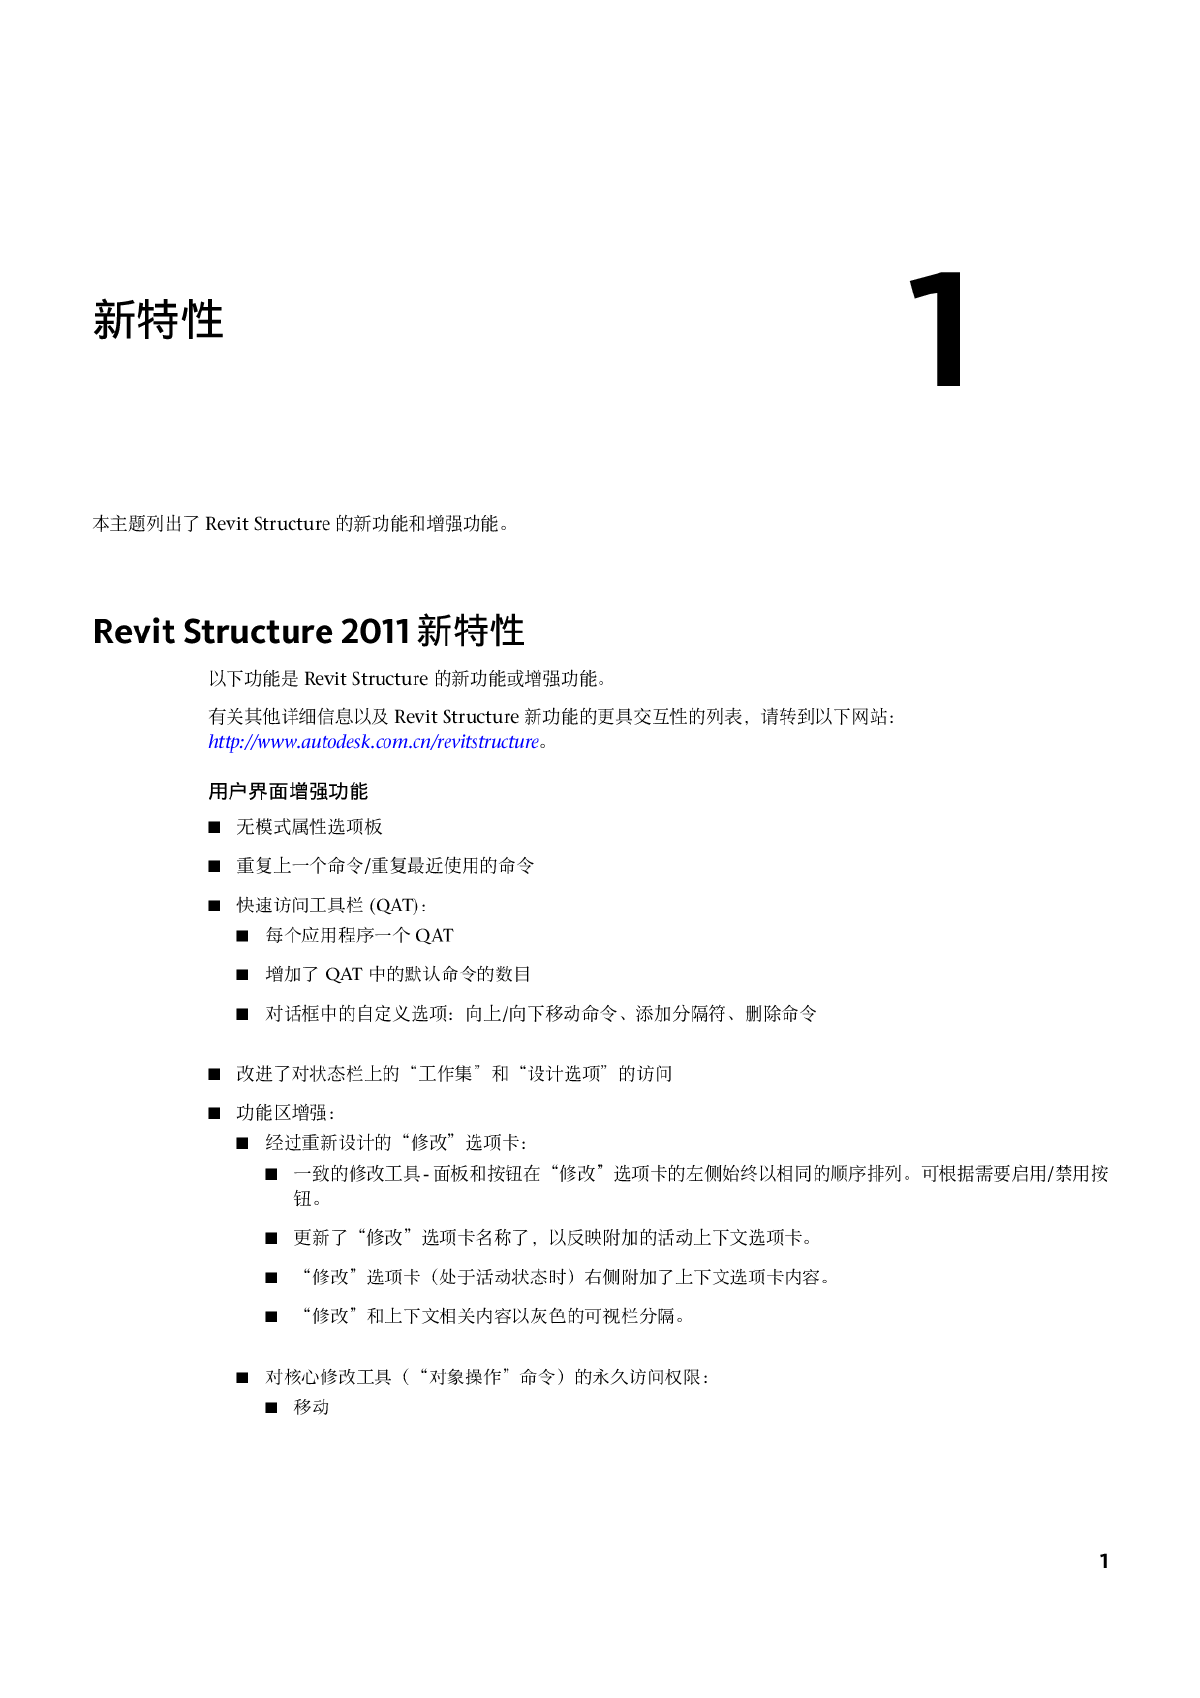 Revit_structure_2011_用户手册(一)